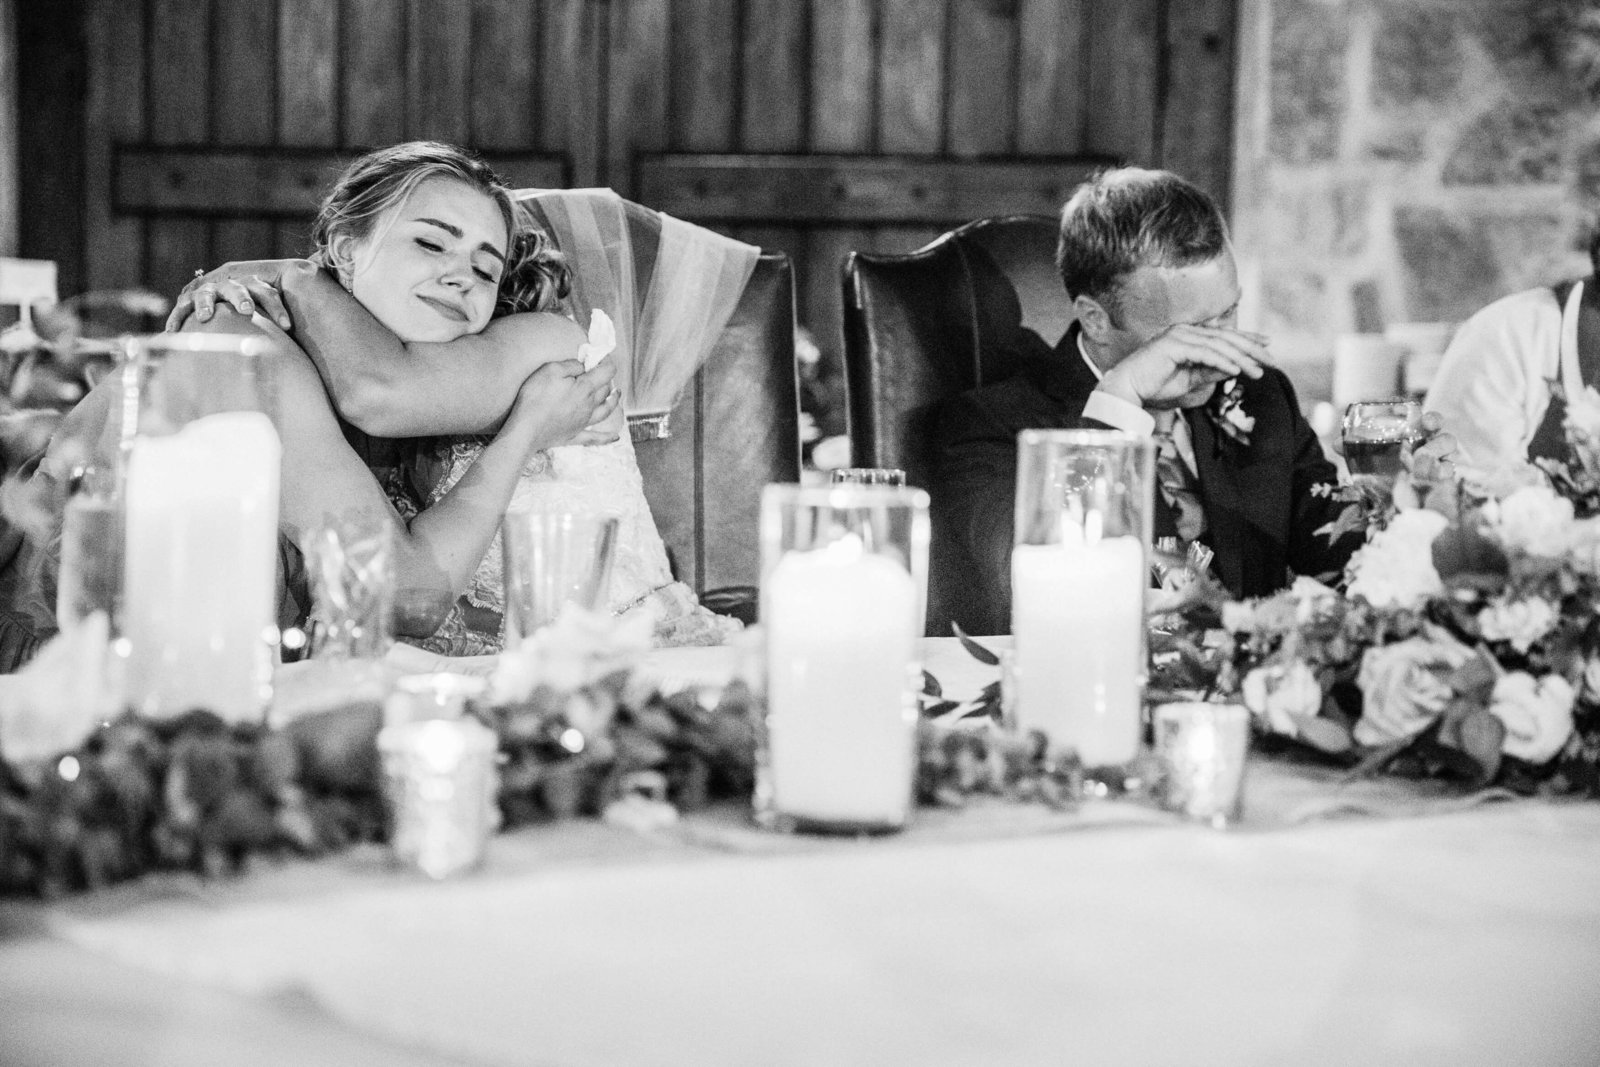 Swiftwater-Cellars-wedding-Lauren-Peter-June-22-by-adina-preston-photography-291